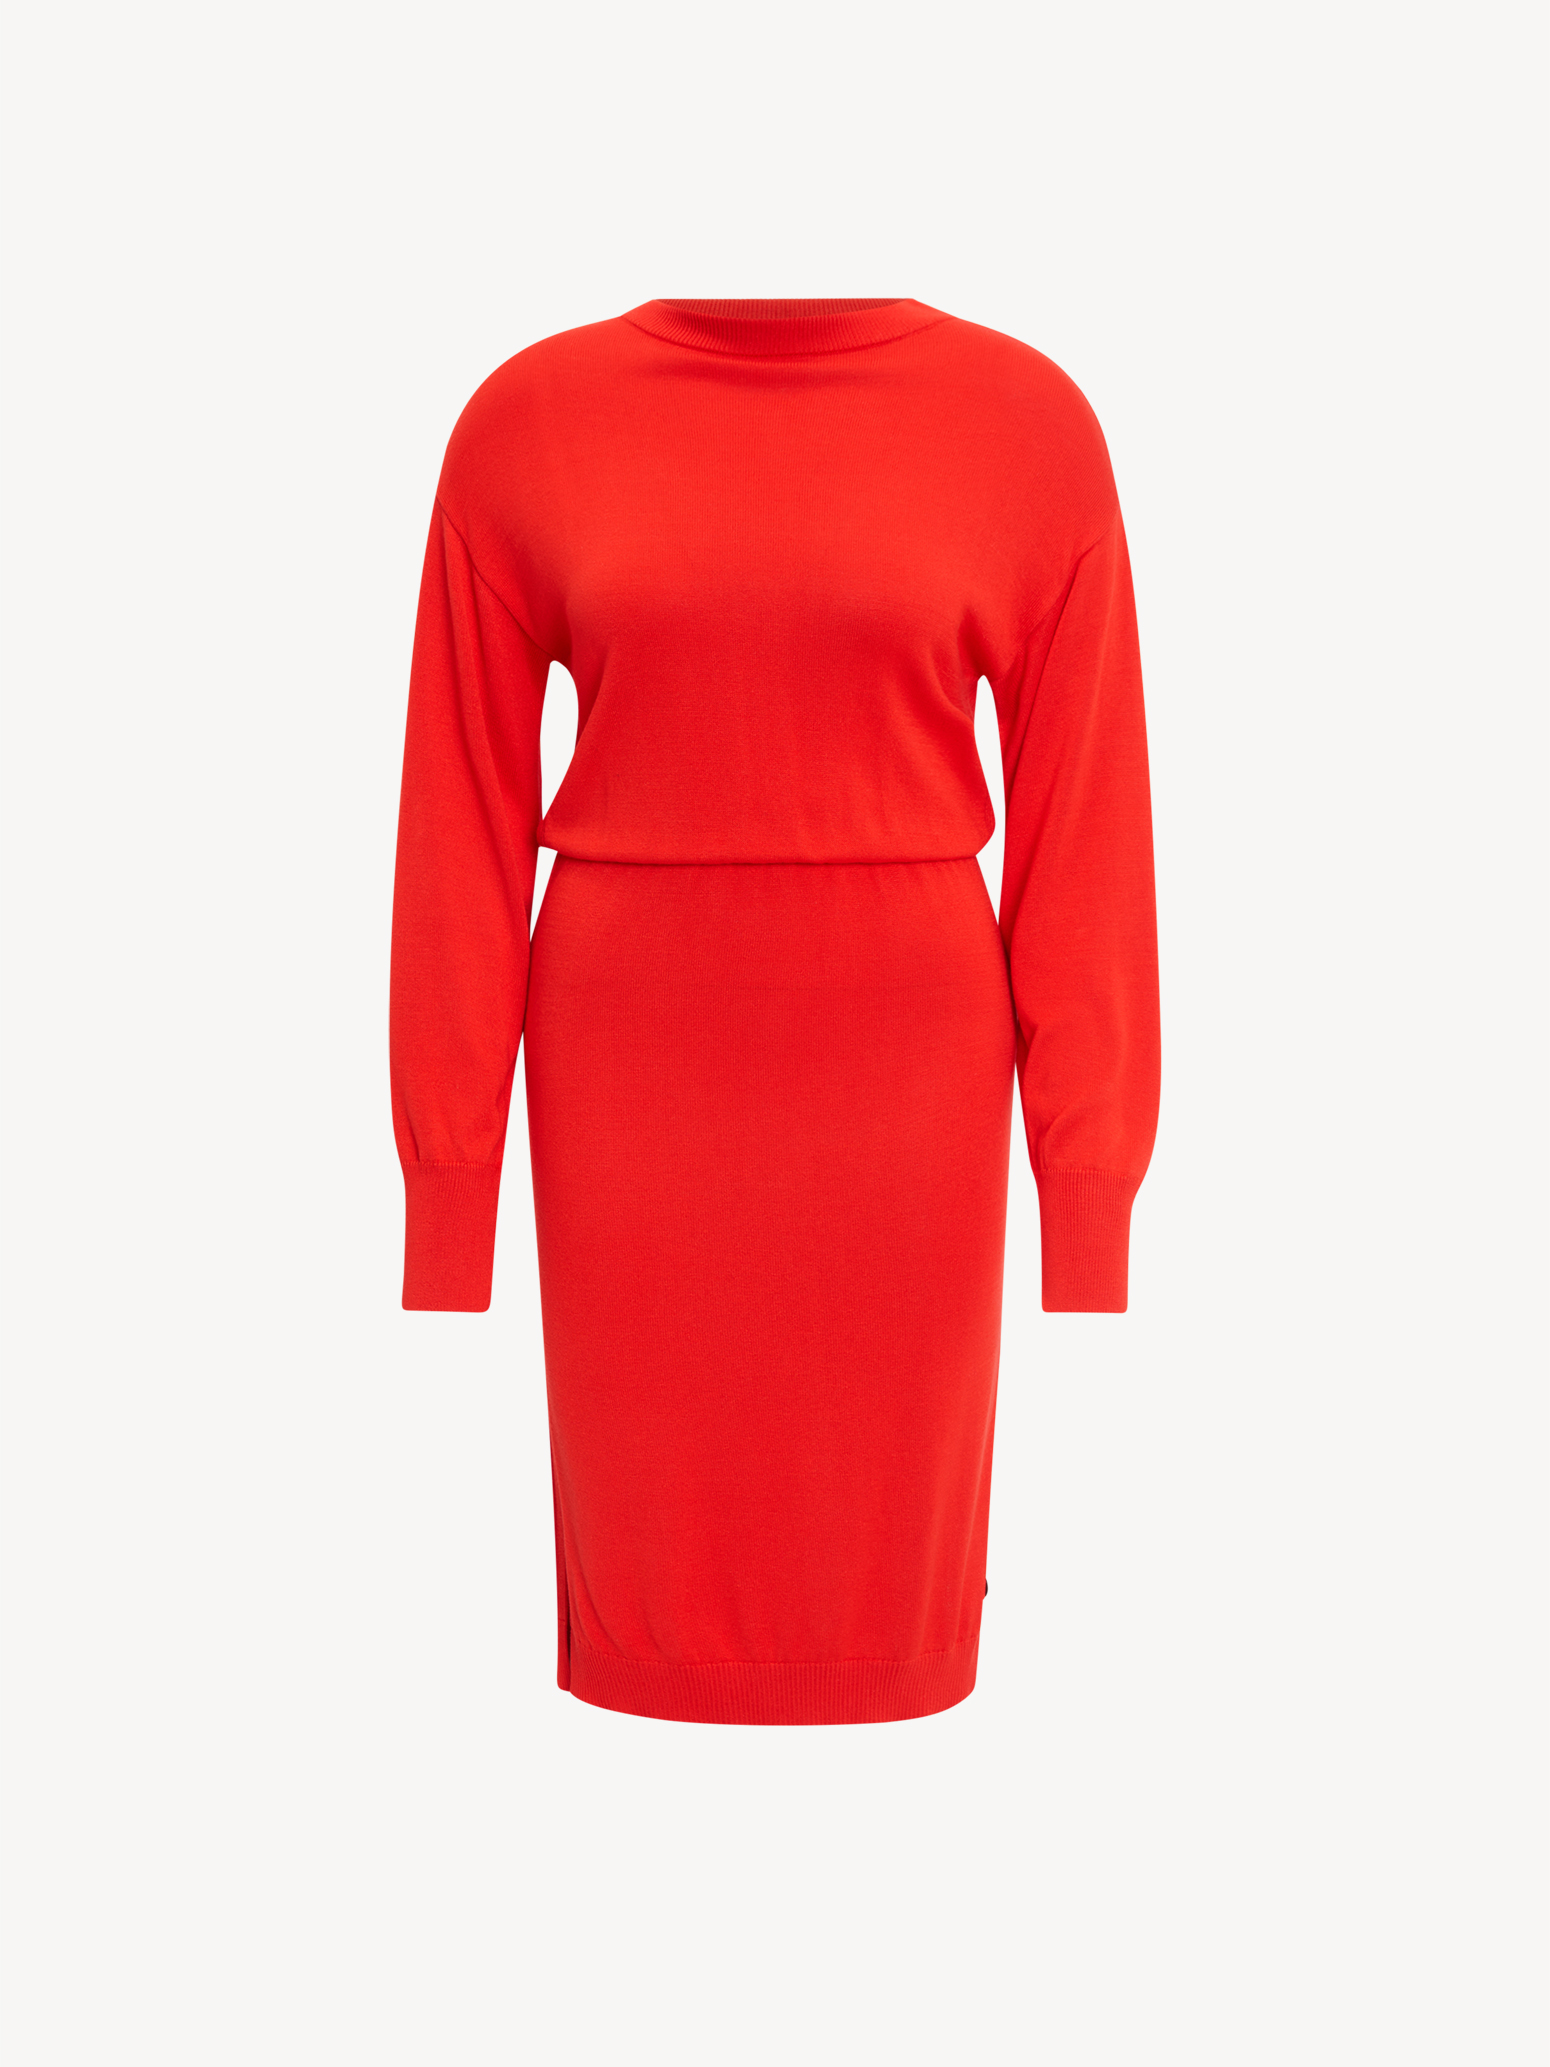 kaufen! online TAW0329-30042: Kleider rot Röcke Tamaris Kleid & -